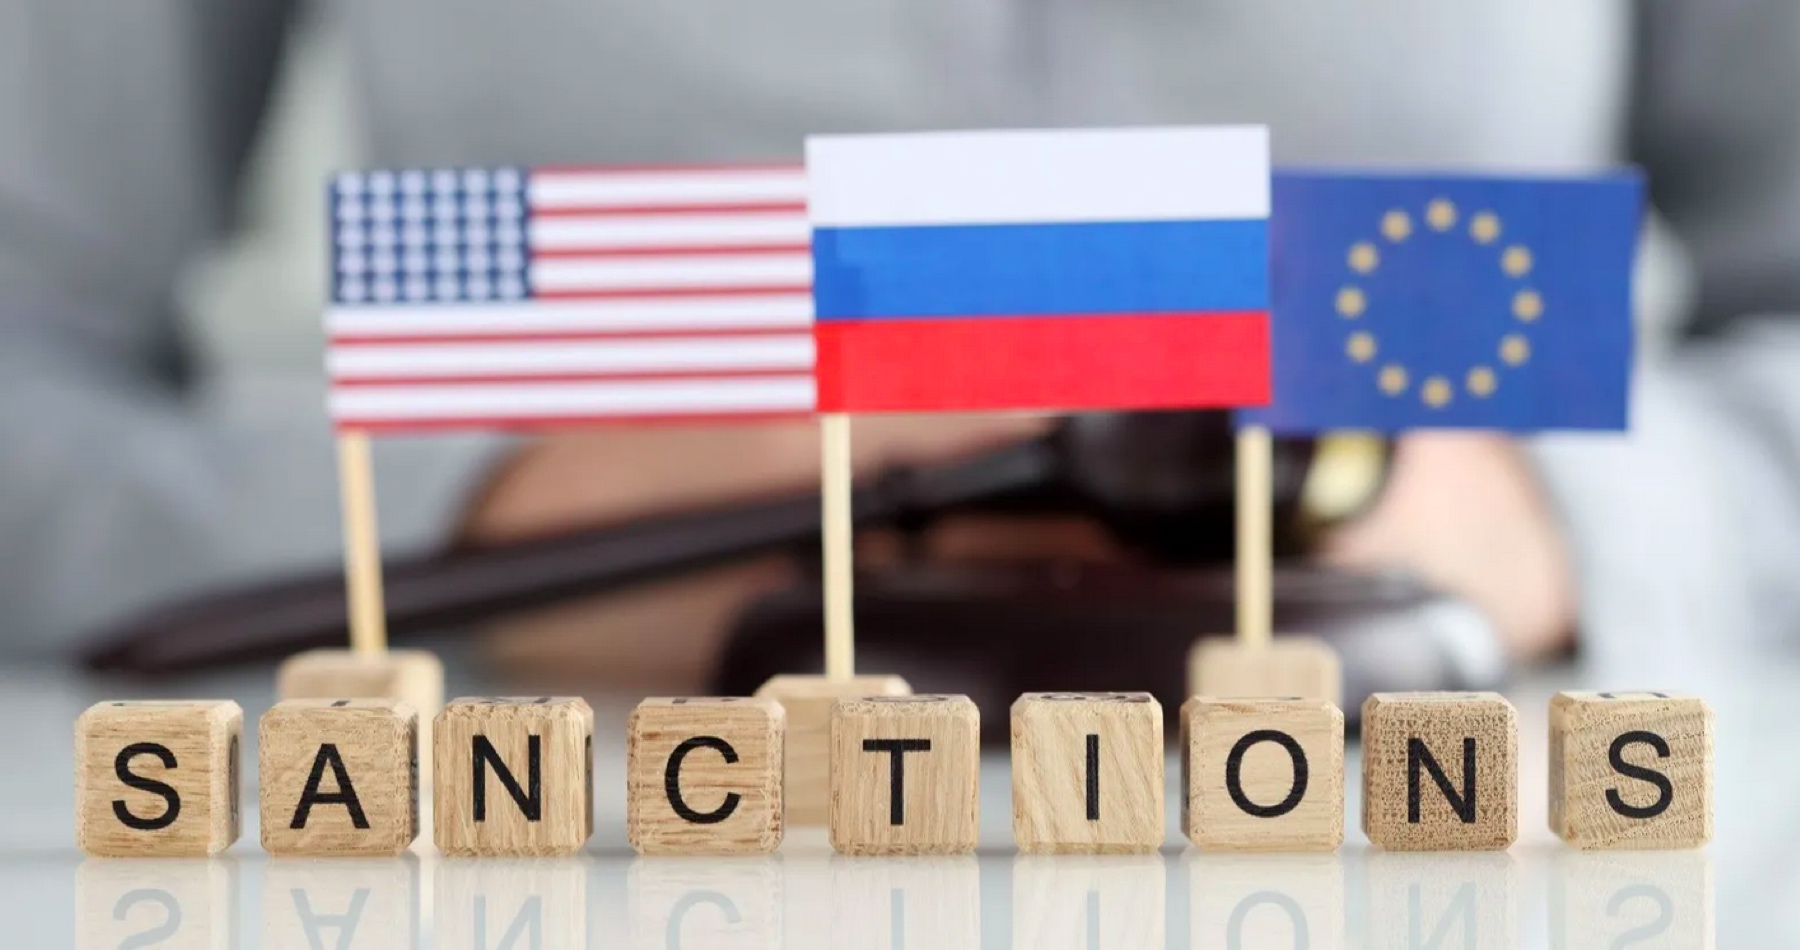 Sankcie sú pozvánkou na odvetu. Rubeľ silnie bok po boku s Putinom, píše The Guardian